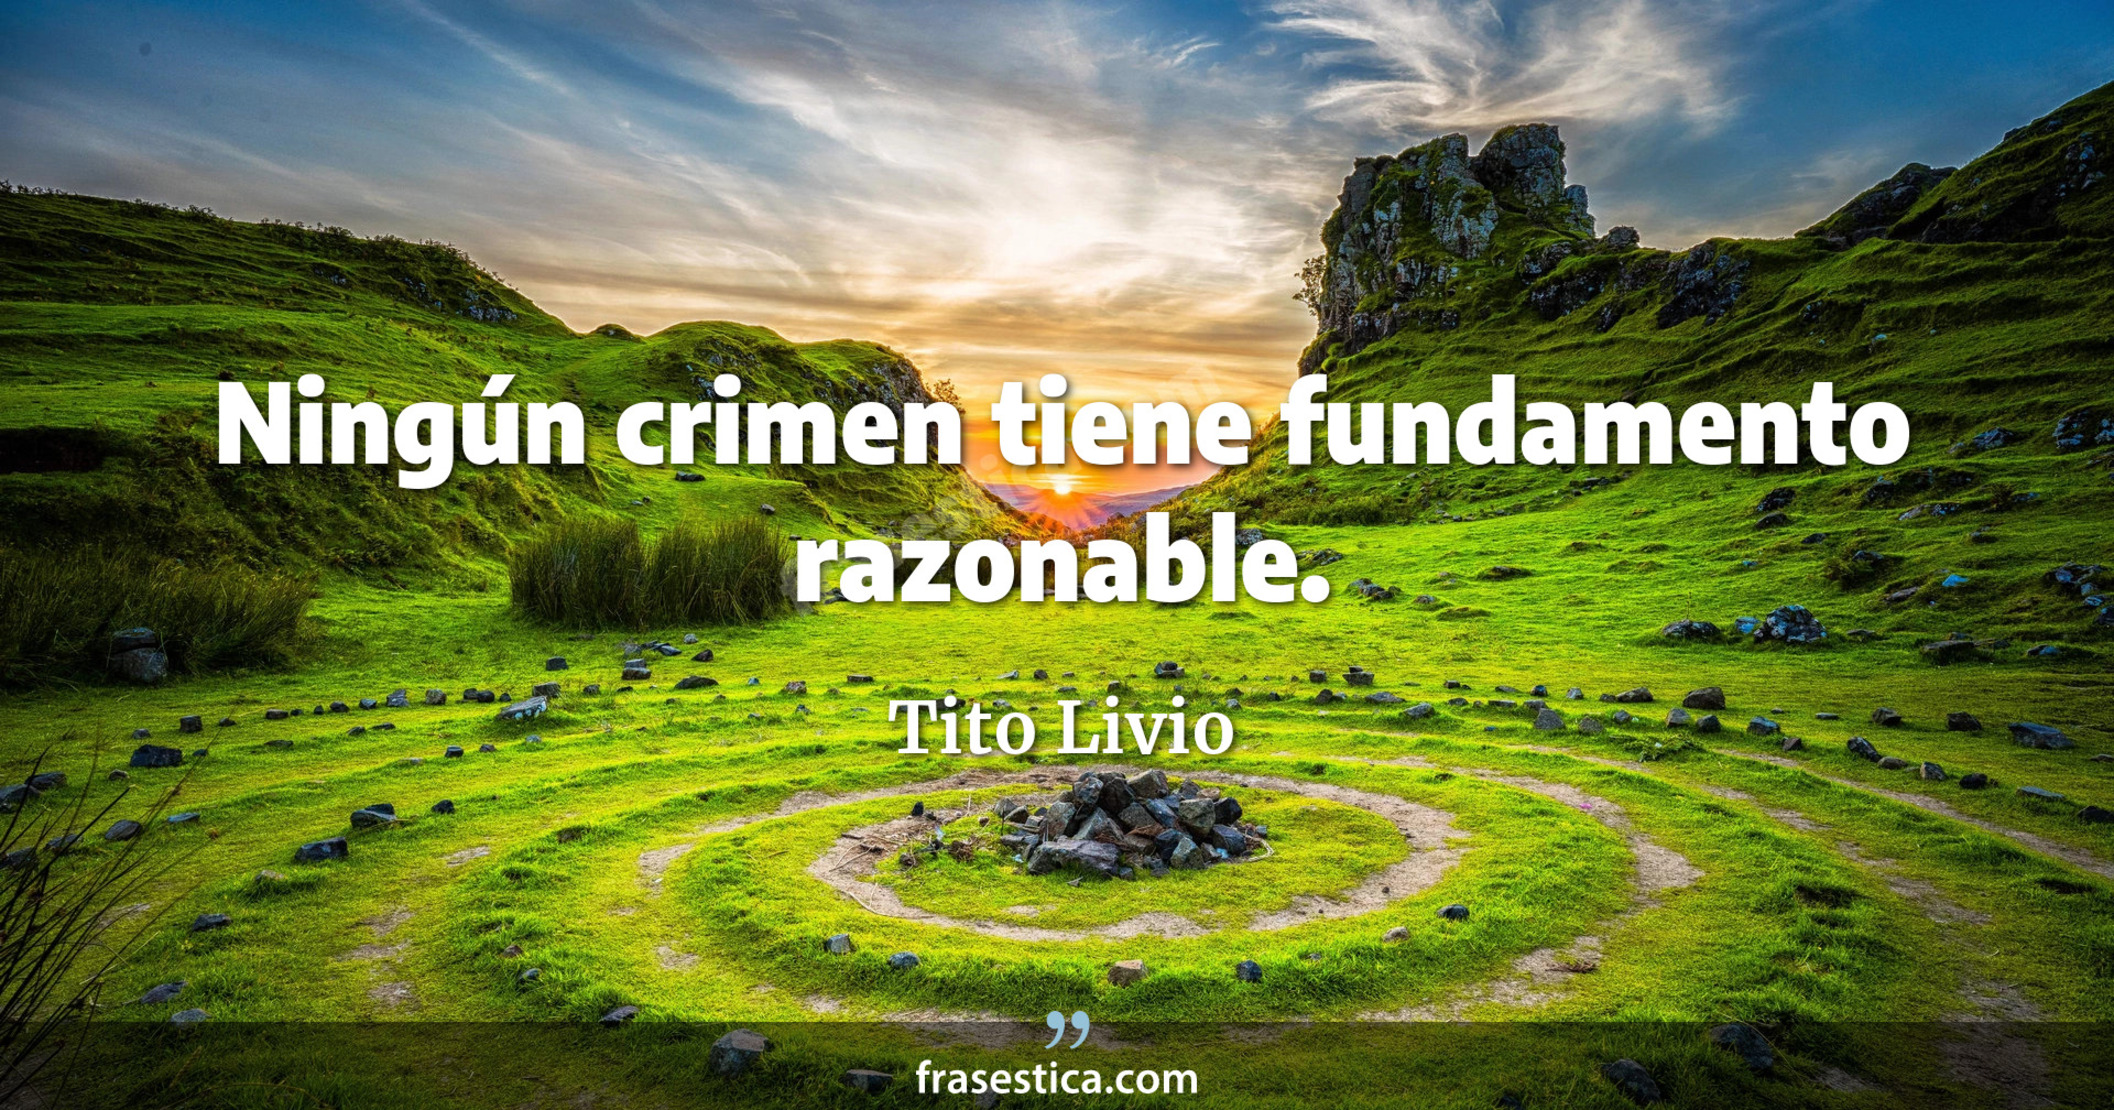 Ningún crimen tiene fundamento razonable. - Tito Livio